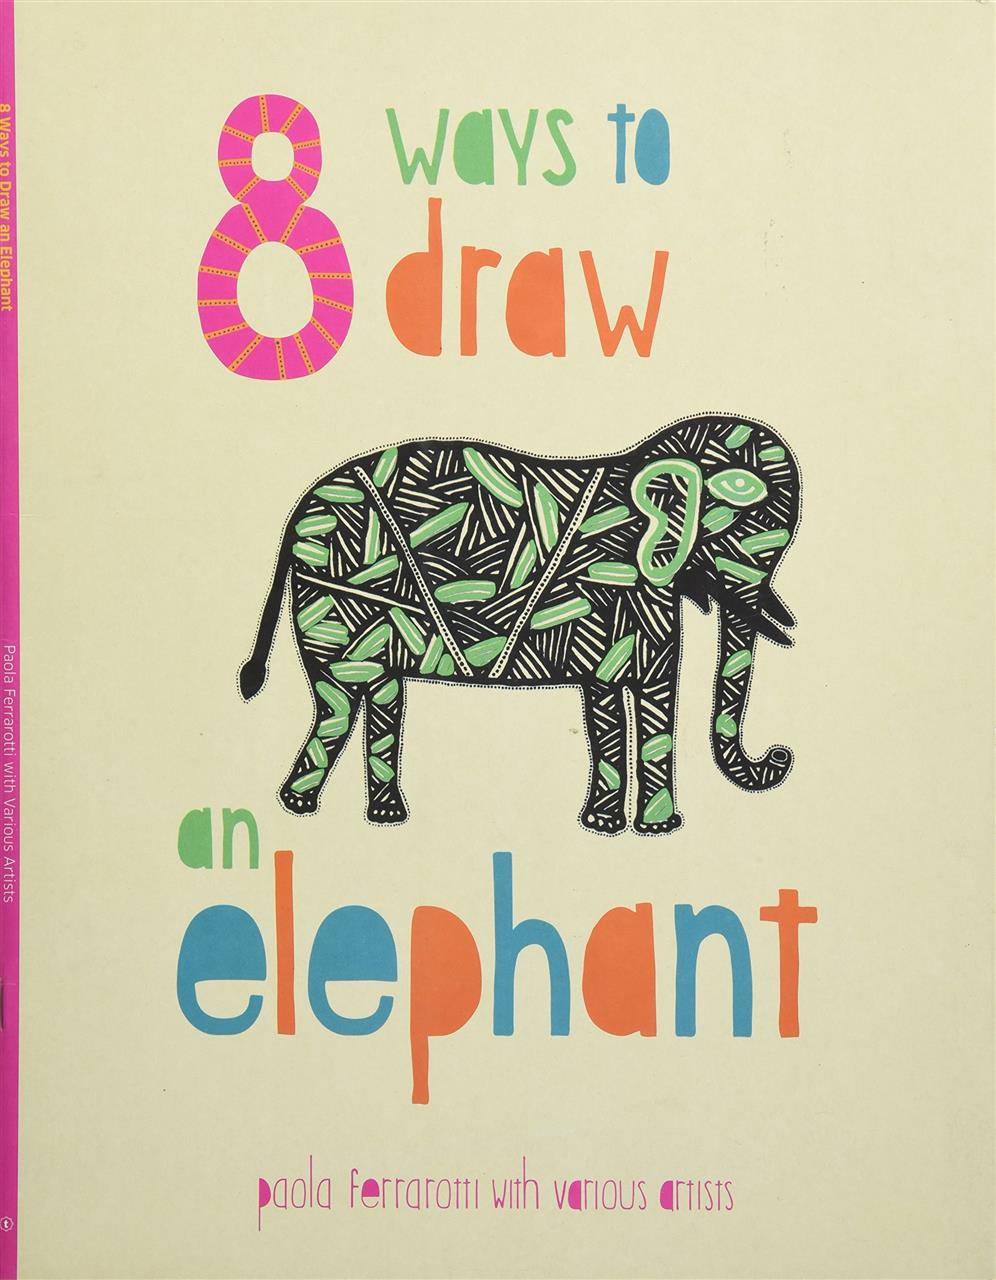 8 Ways to draw an Elephant